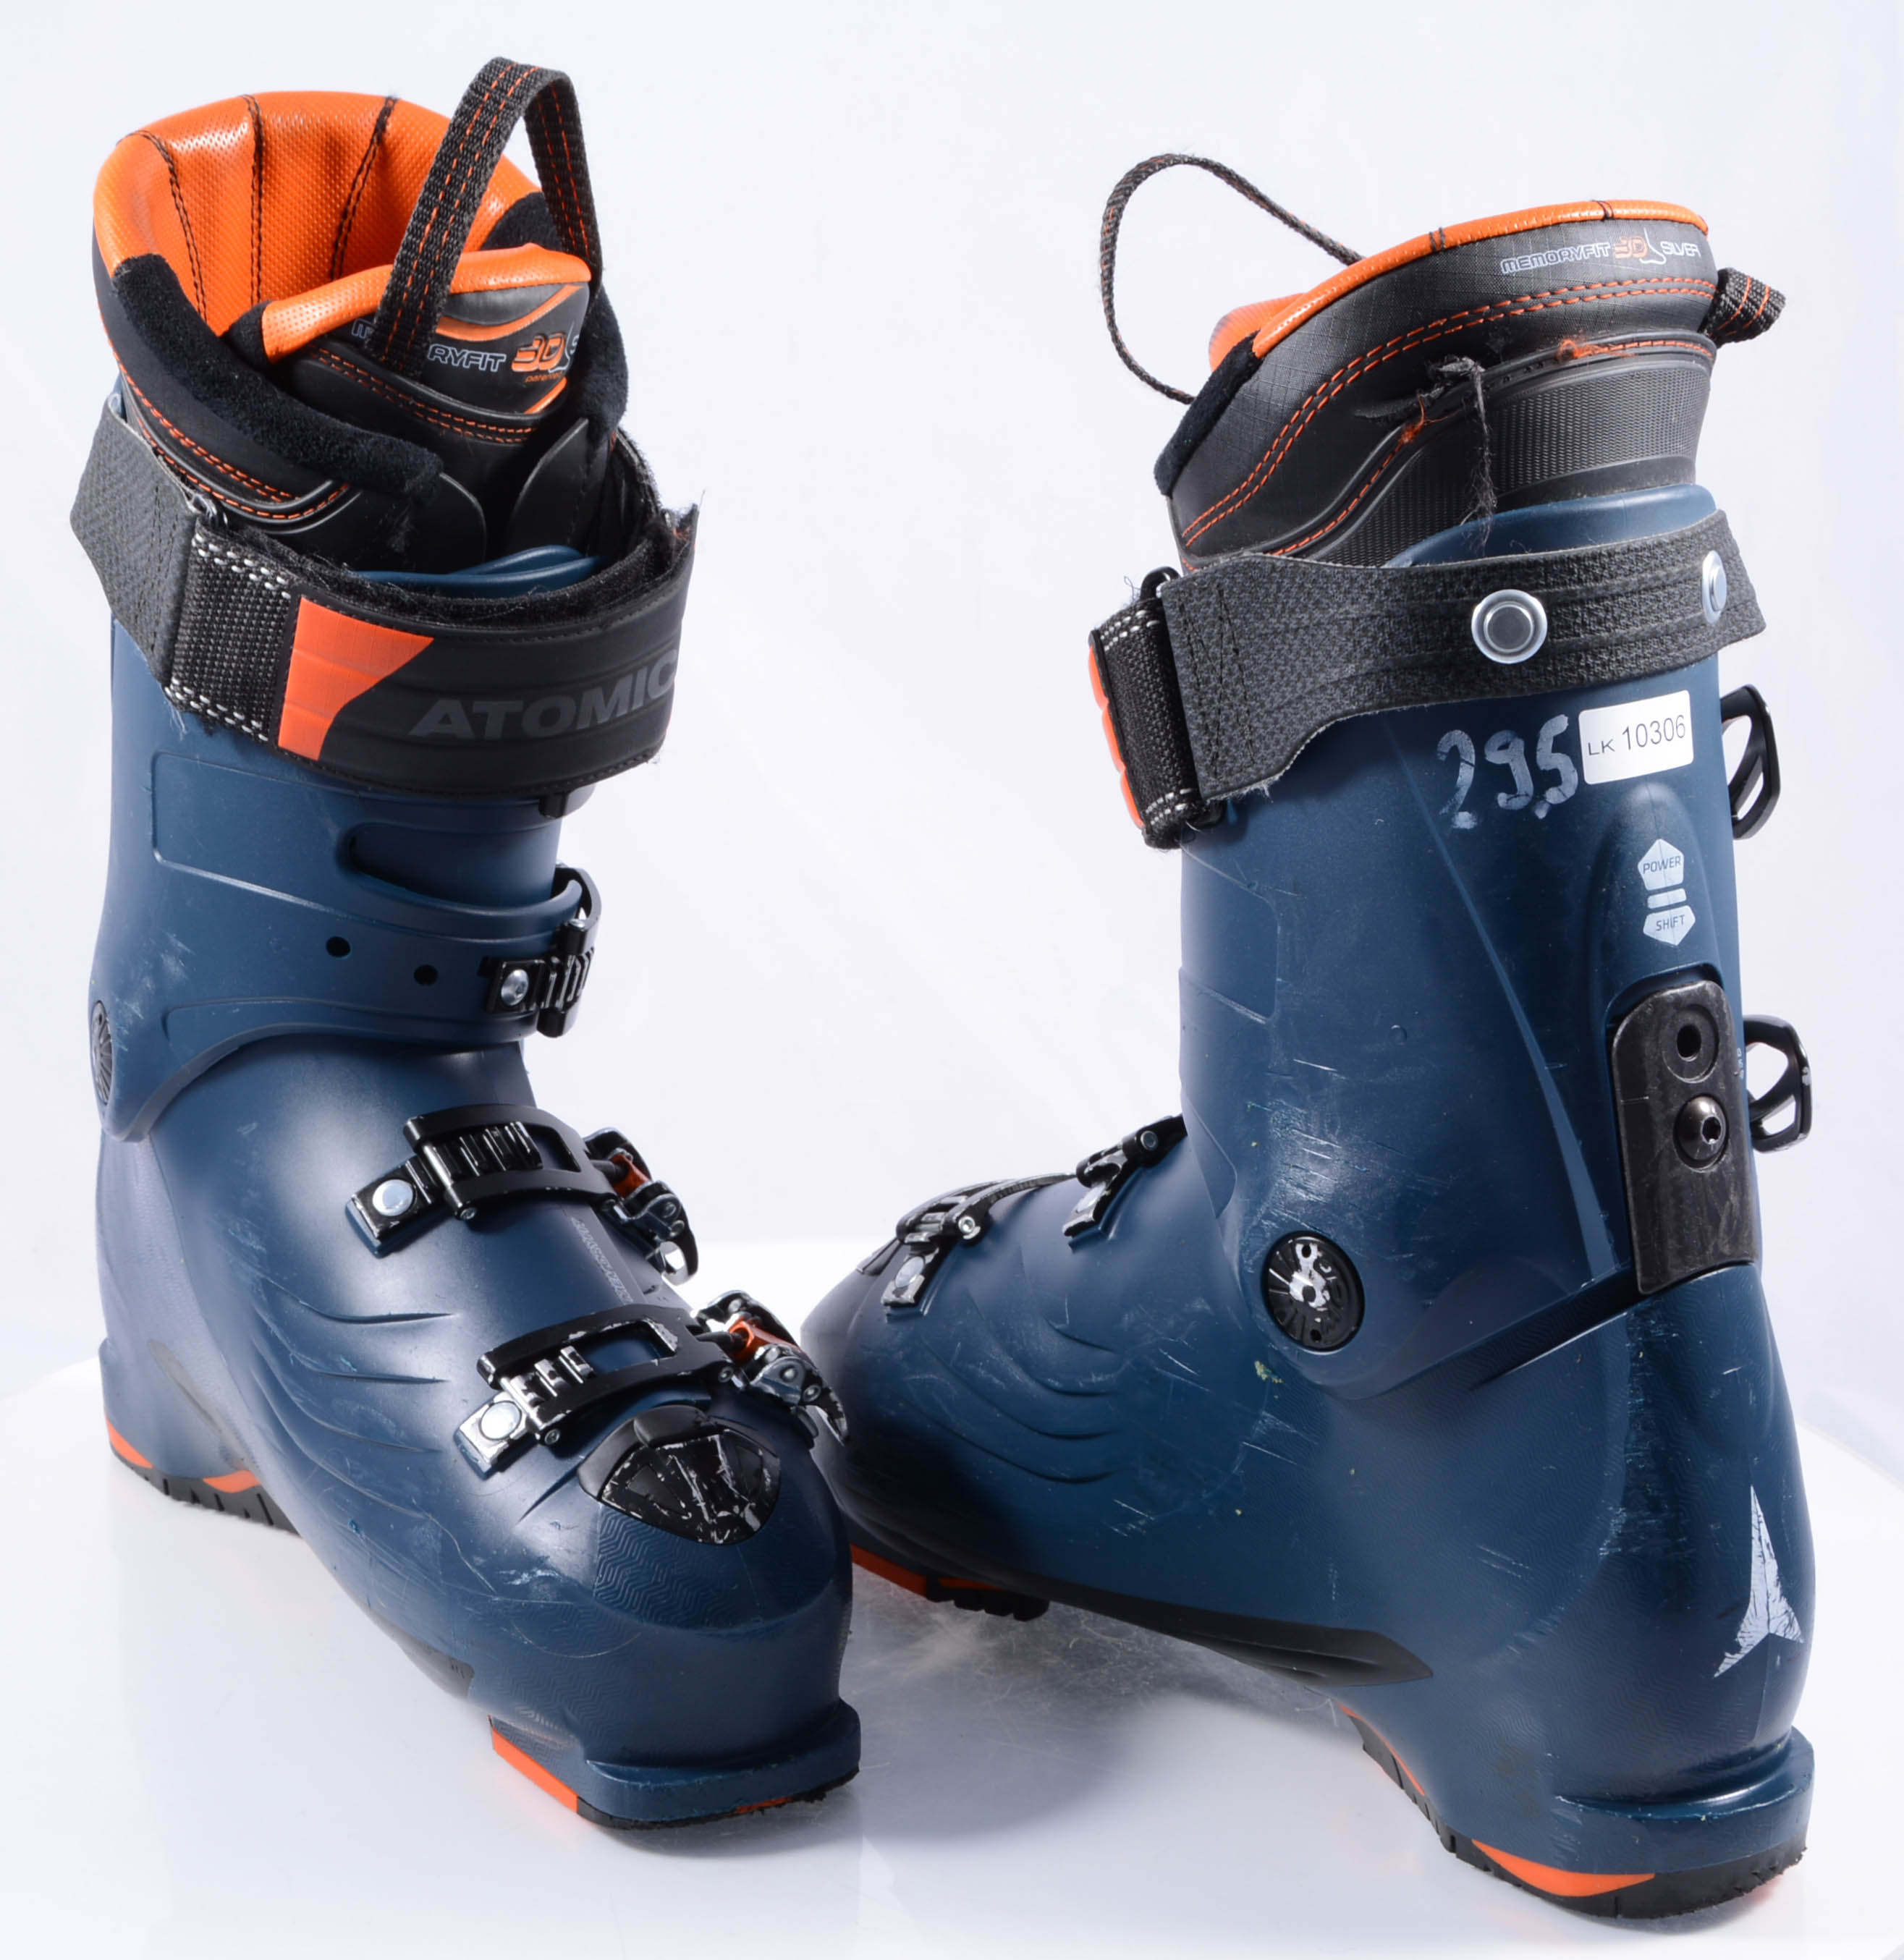 Intiem Typisch Kruipen ski boots ATOMIC HAWX PRIME 110, Memory Fit, Power Shift, DARK BLUE/orange  - Mardosport.co.uk